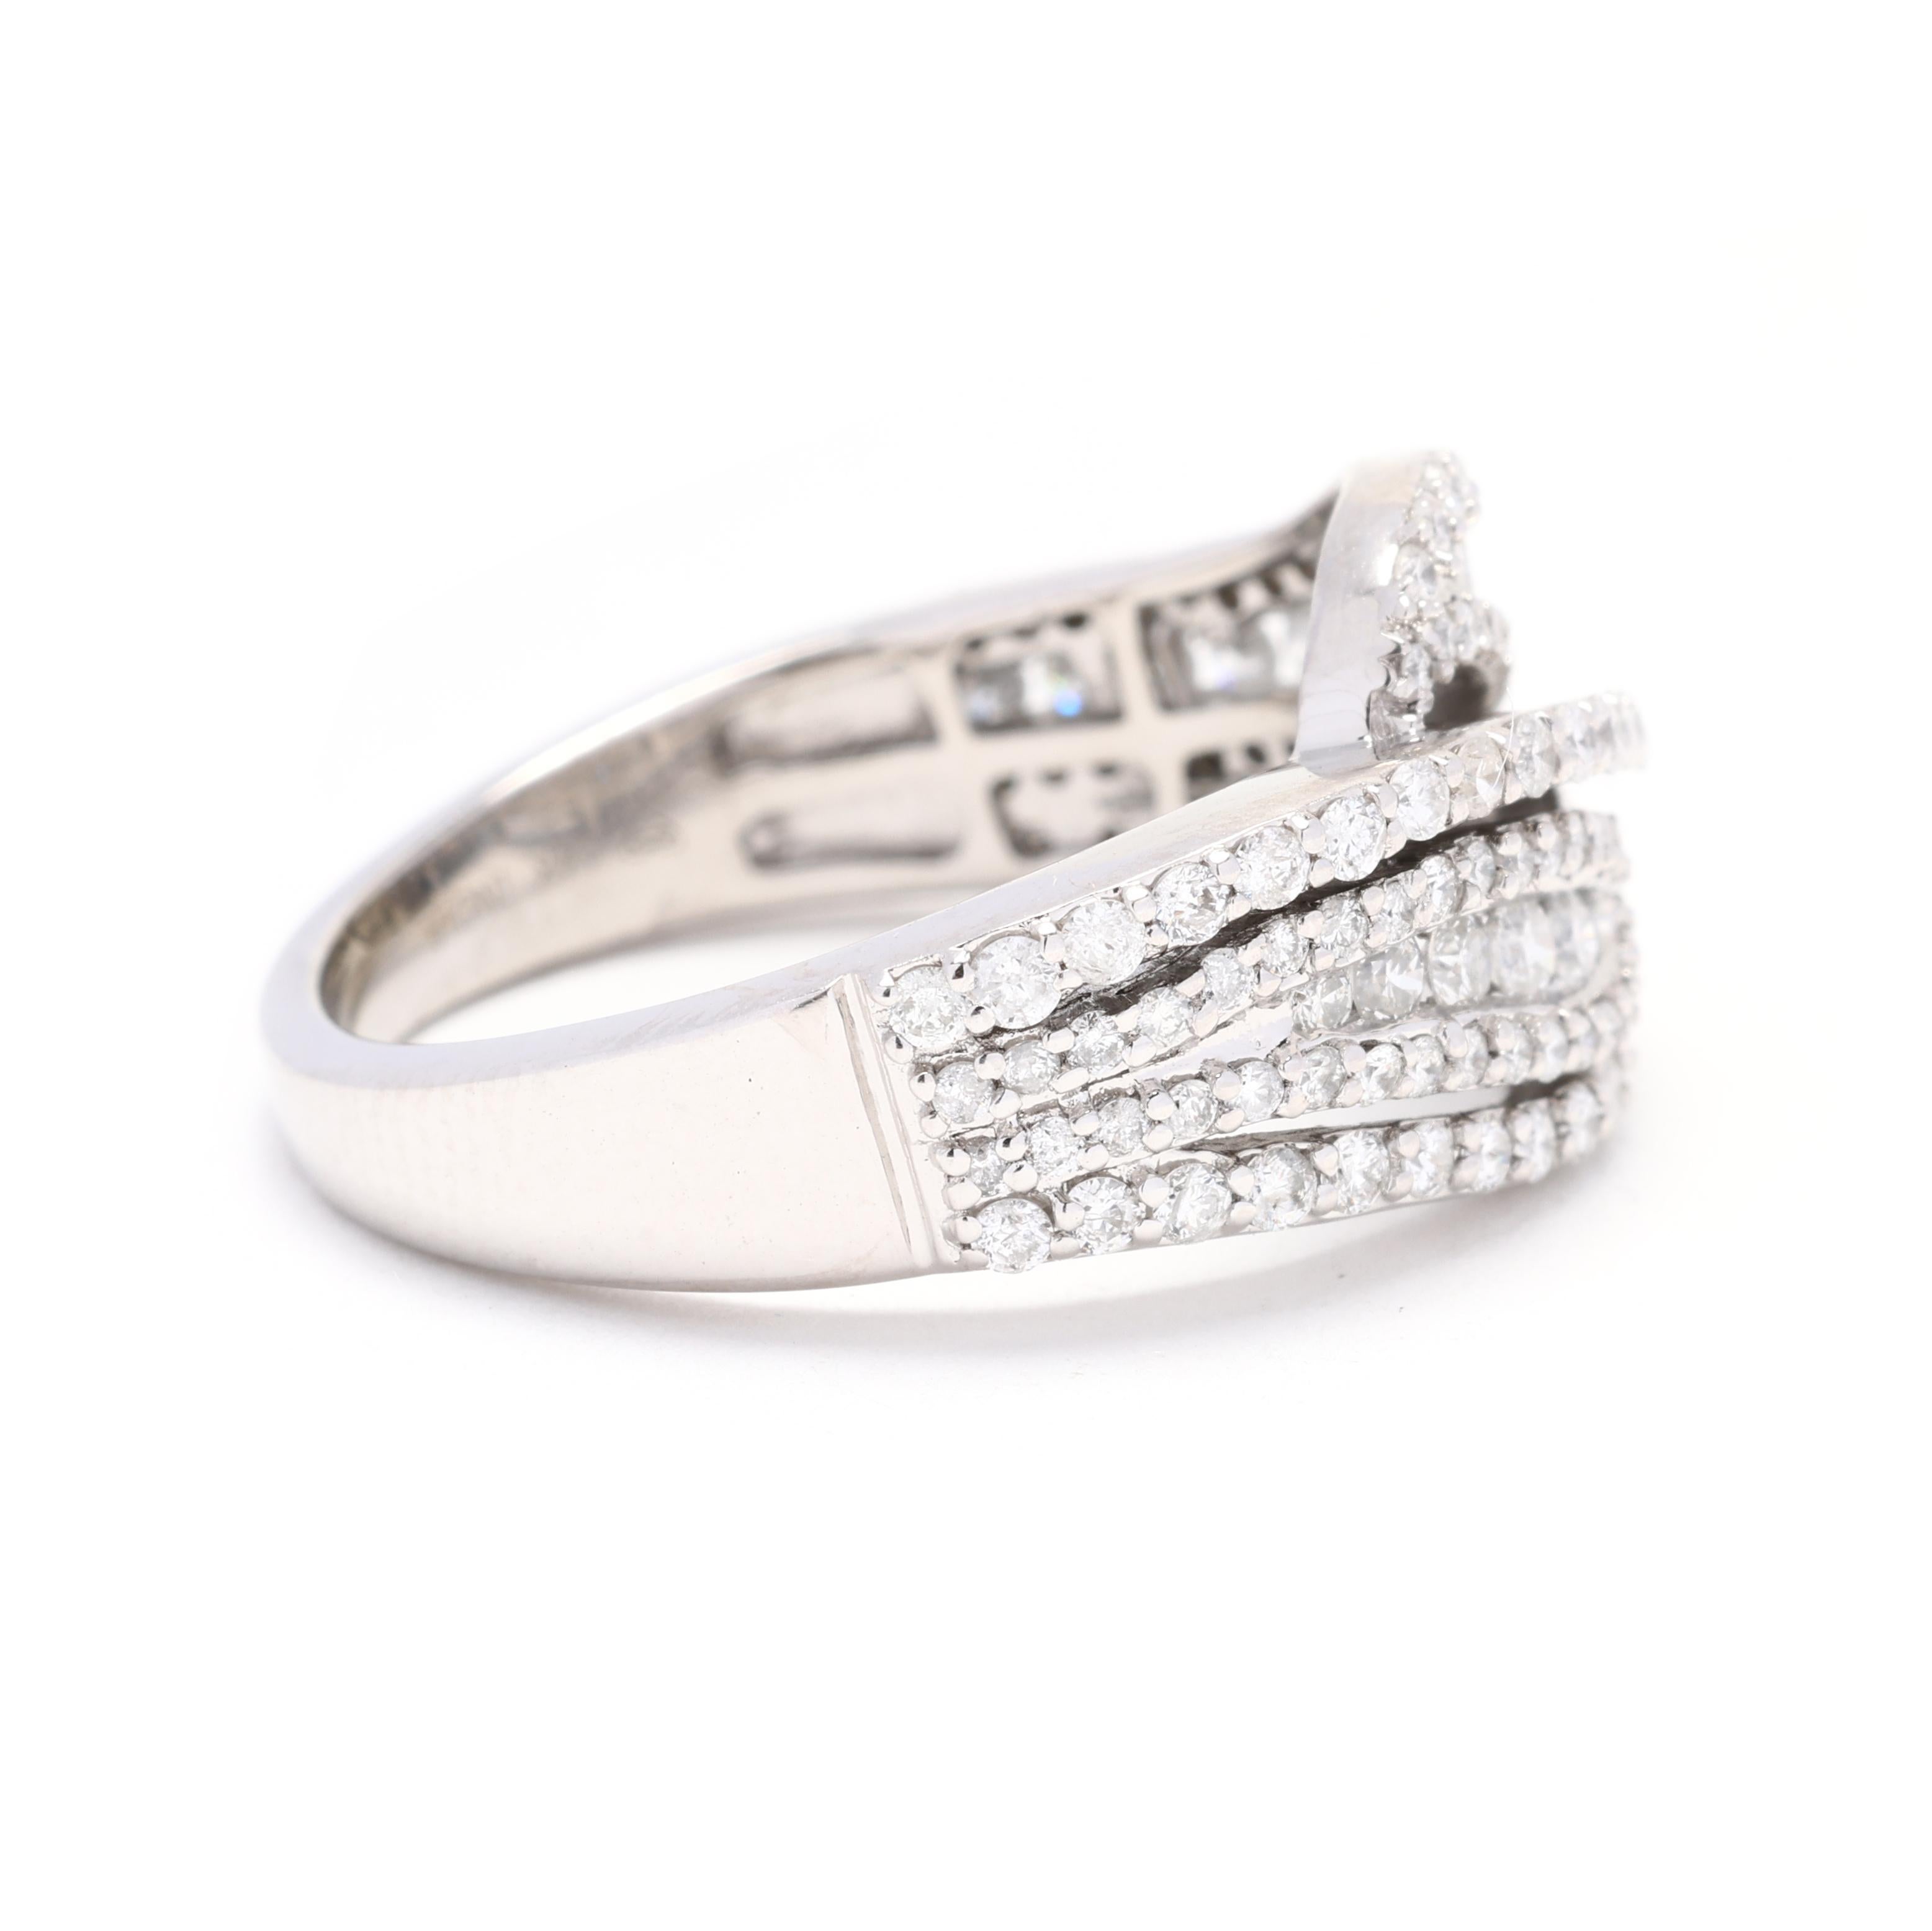 Cette magnifique bague à anneau torsadé en or blanc 14k et diamant de 0,90ctw est une véritable pièce d'apparat. Le design complexe de l'anneau torsadé ajoute un élément unique et accrocheur à cette élégante bague. Fabriquée en or blanc 14k de haute